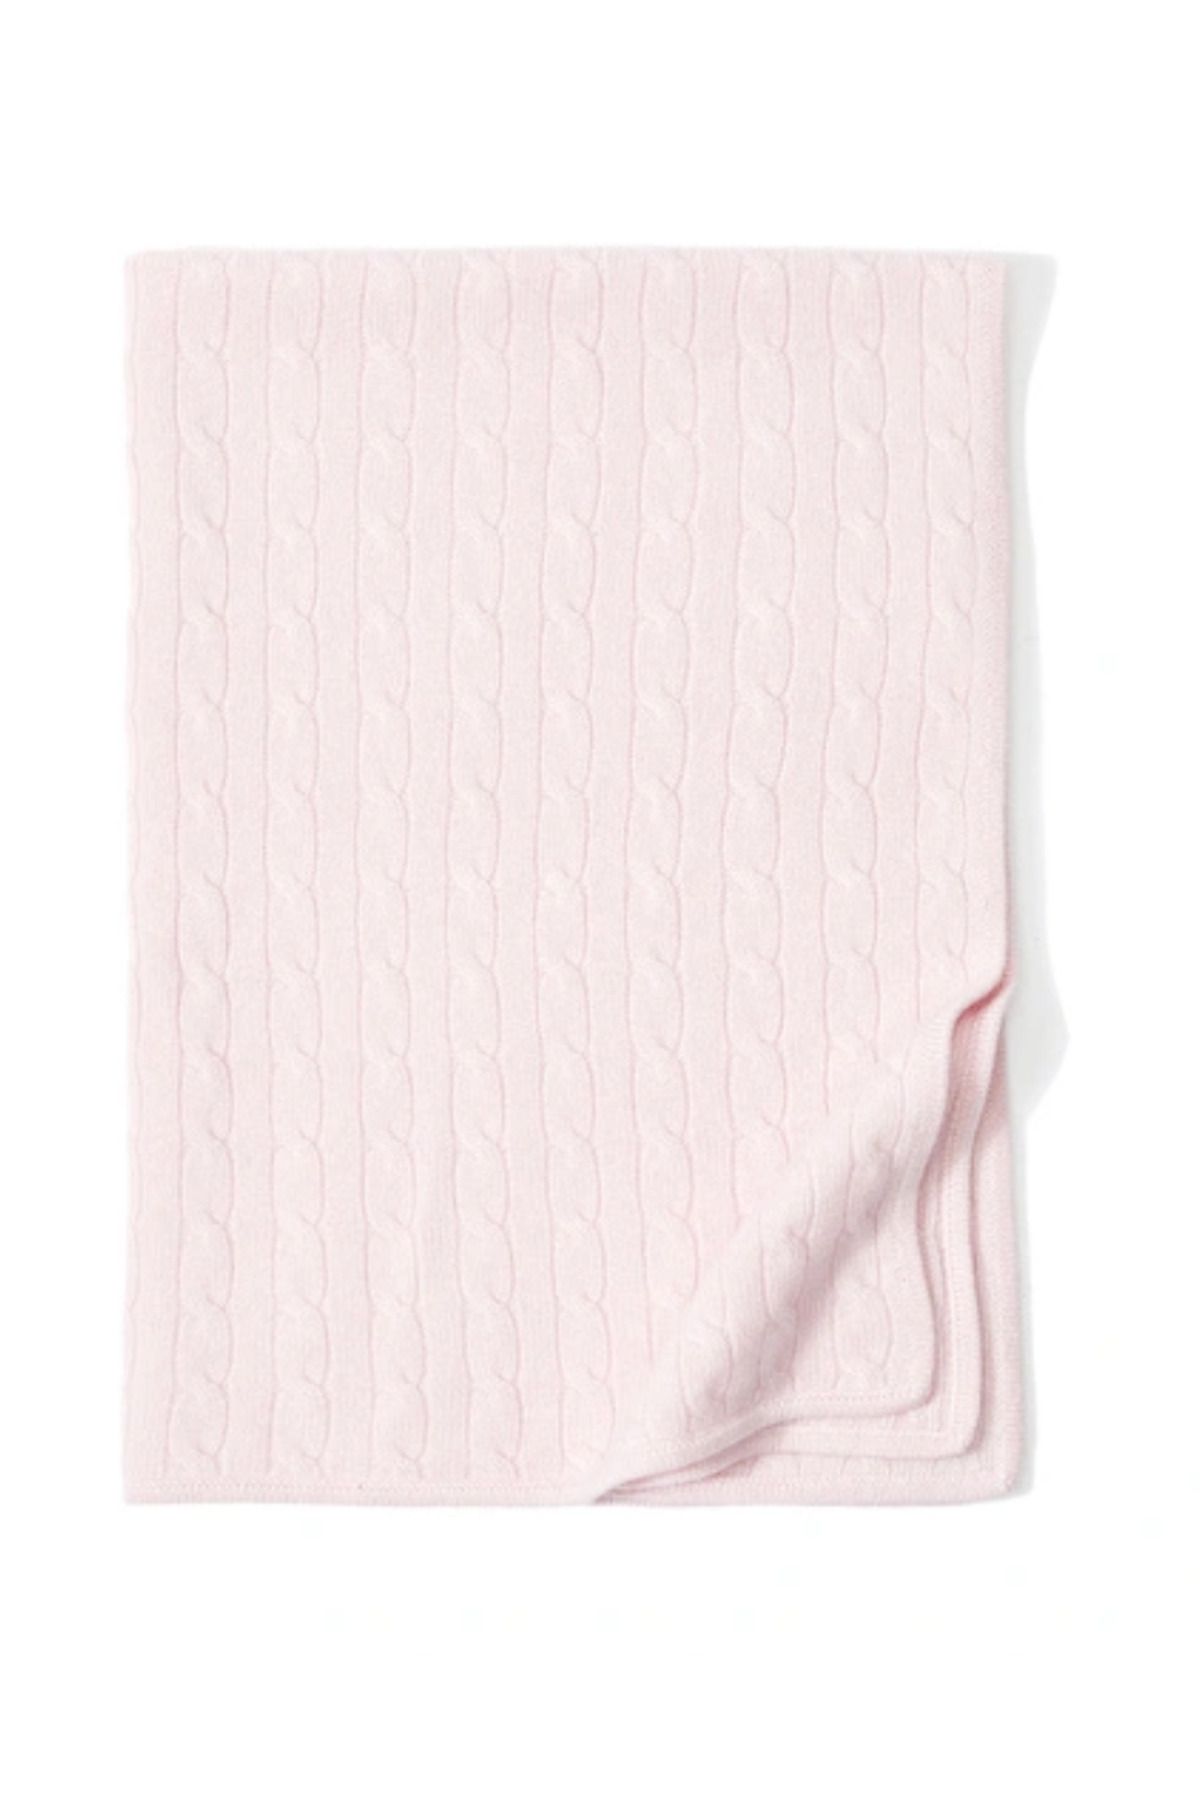 Ralph Lauren Cashmere Baby Blanket